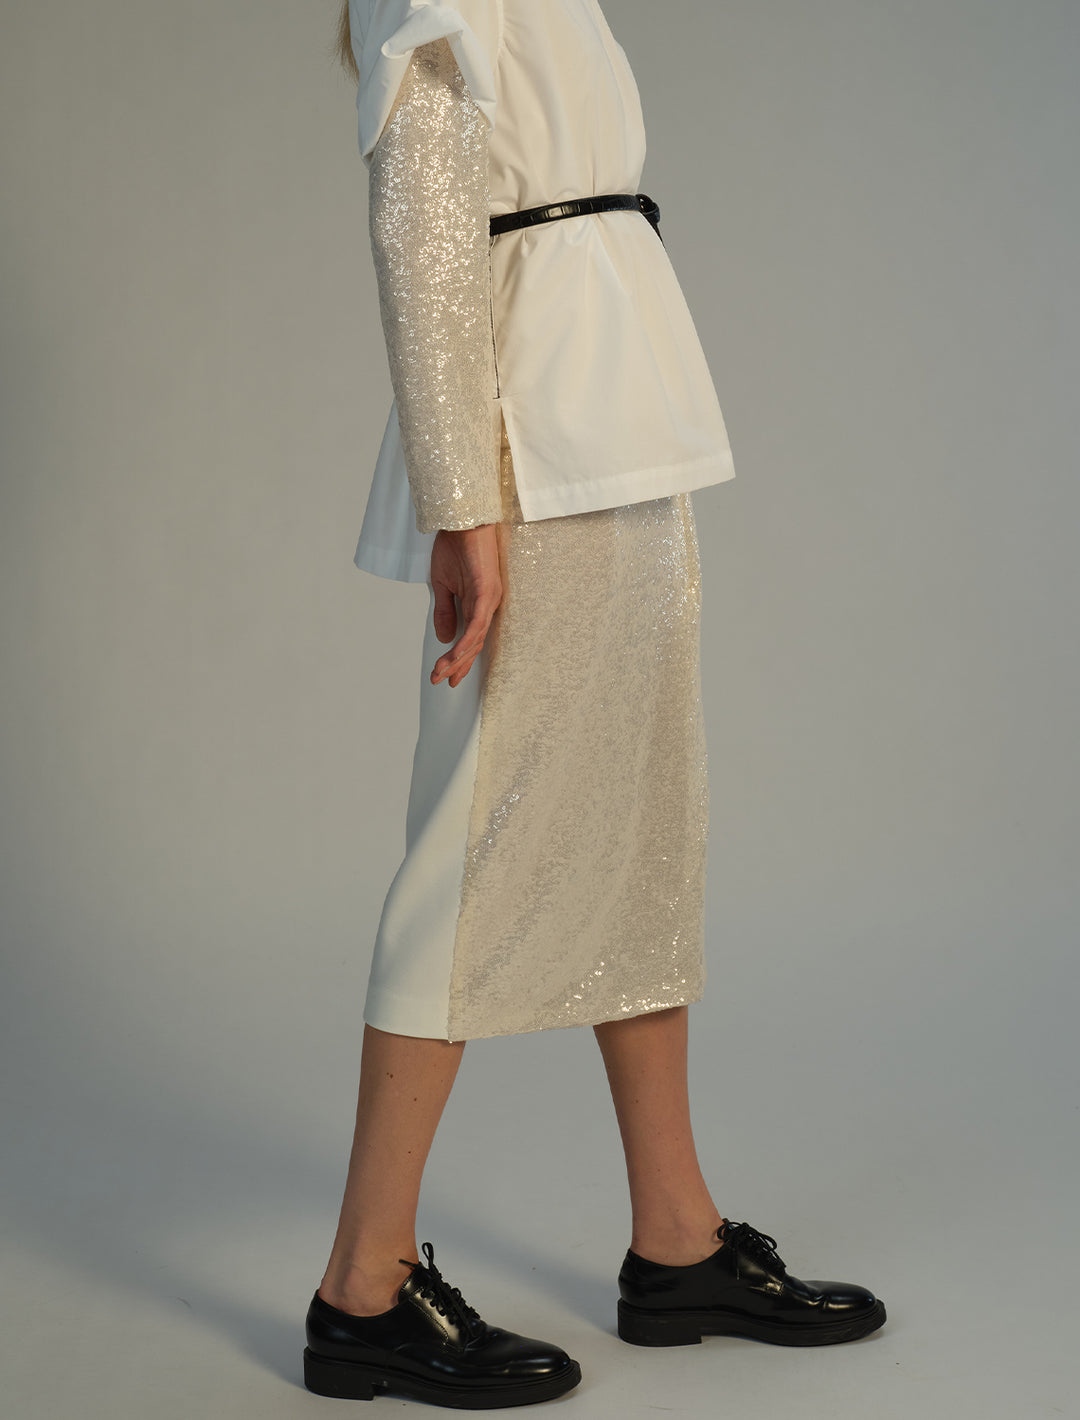 Model wearing Saint Art's Celine Midi Wrap Skirt in Ivory Sequin.